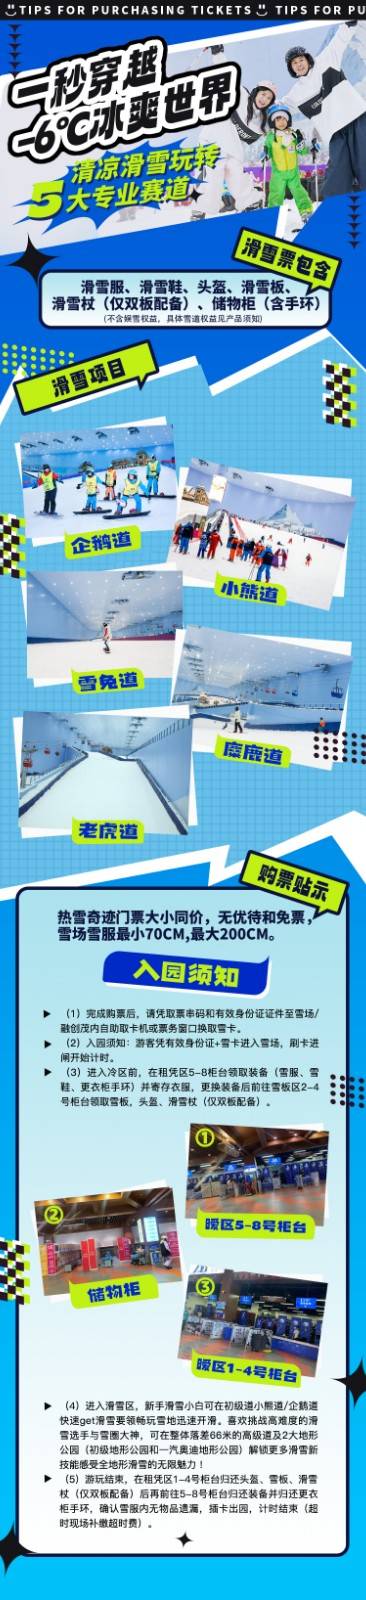 【女神特惠X周末票】广州热雪奇迹-4小时滑雪+娱雪通玩女士特权票丨适用日期3.1-3.17